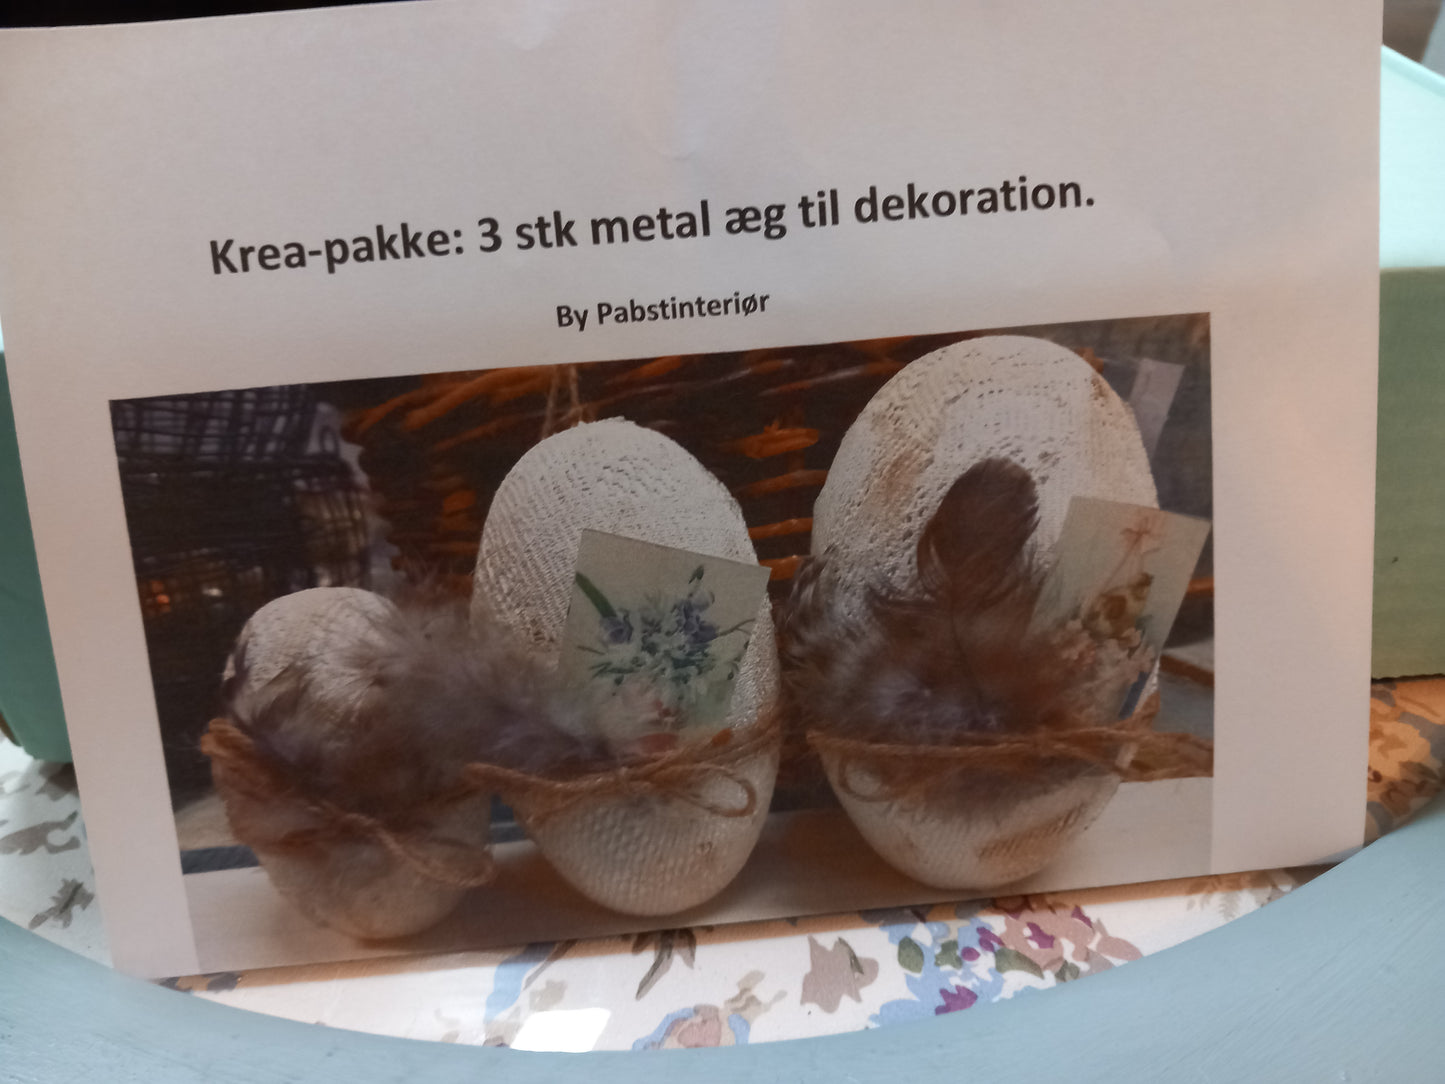 Krea-pakke: 3 stk metal æg til dekoration